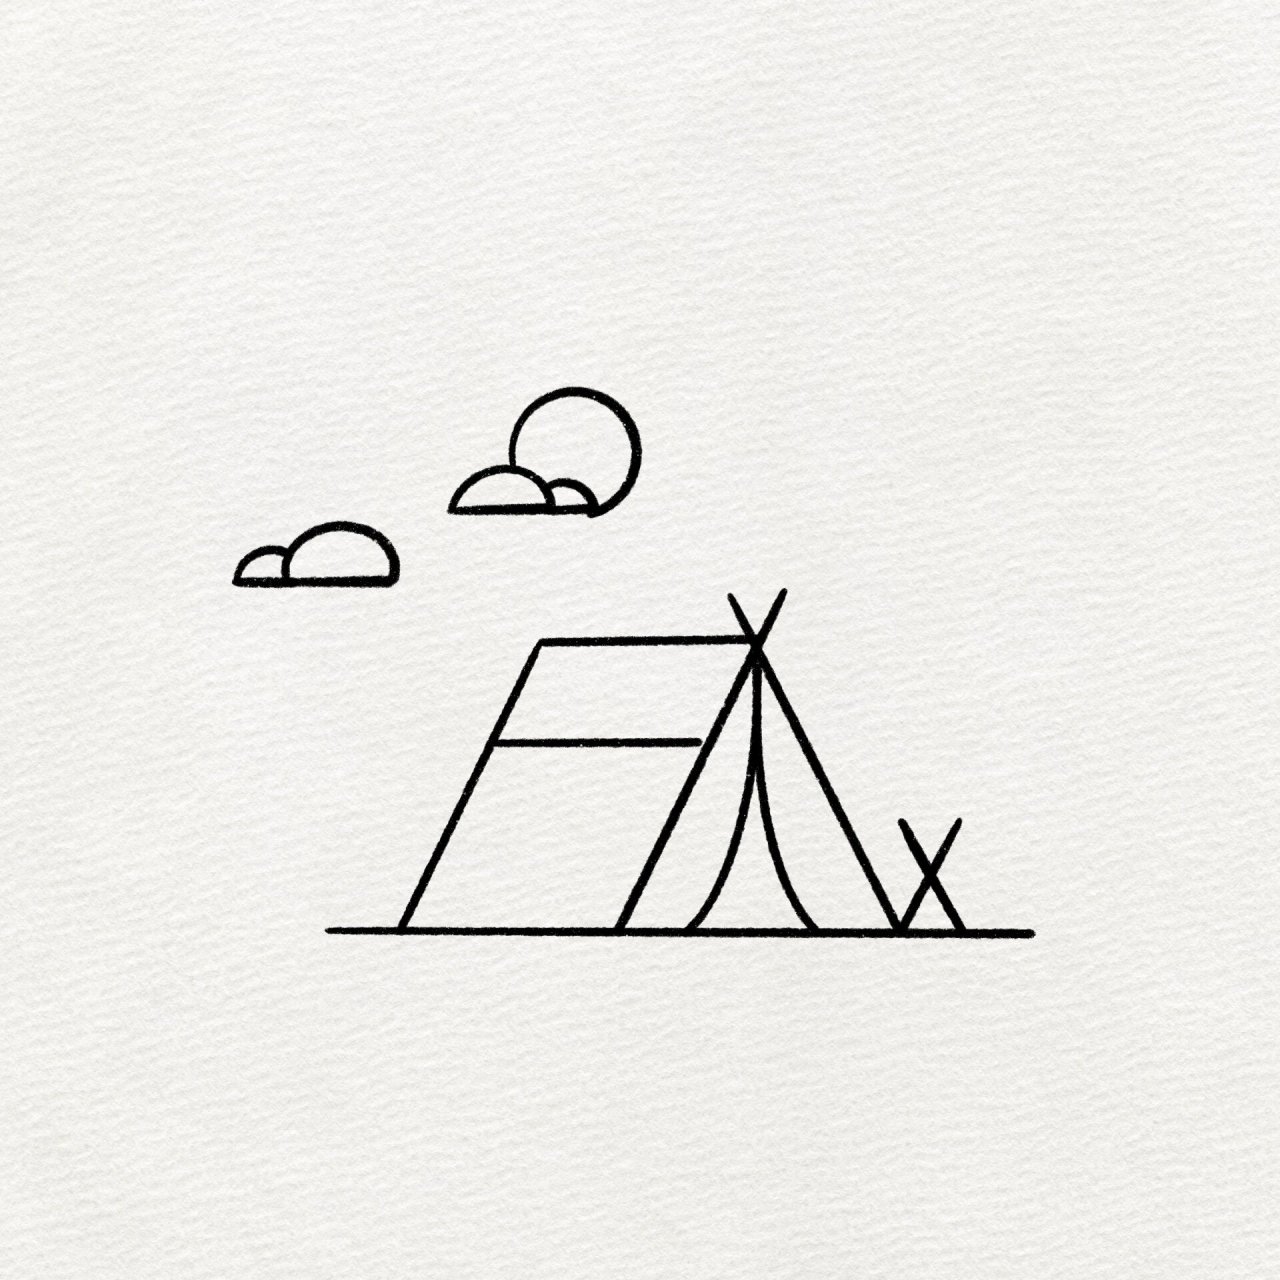 小帐篷简笔画图片图片